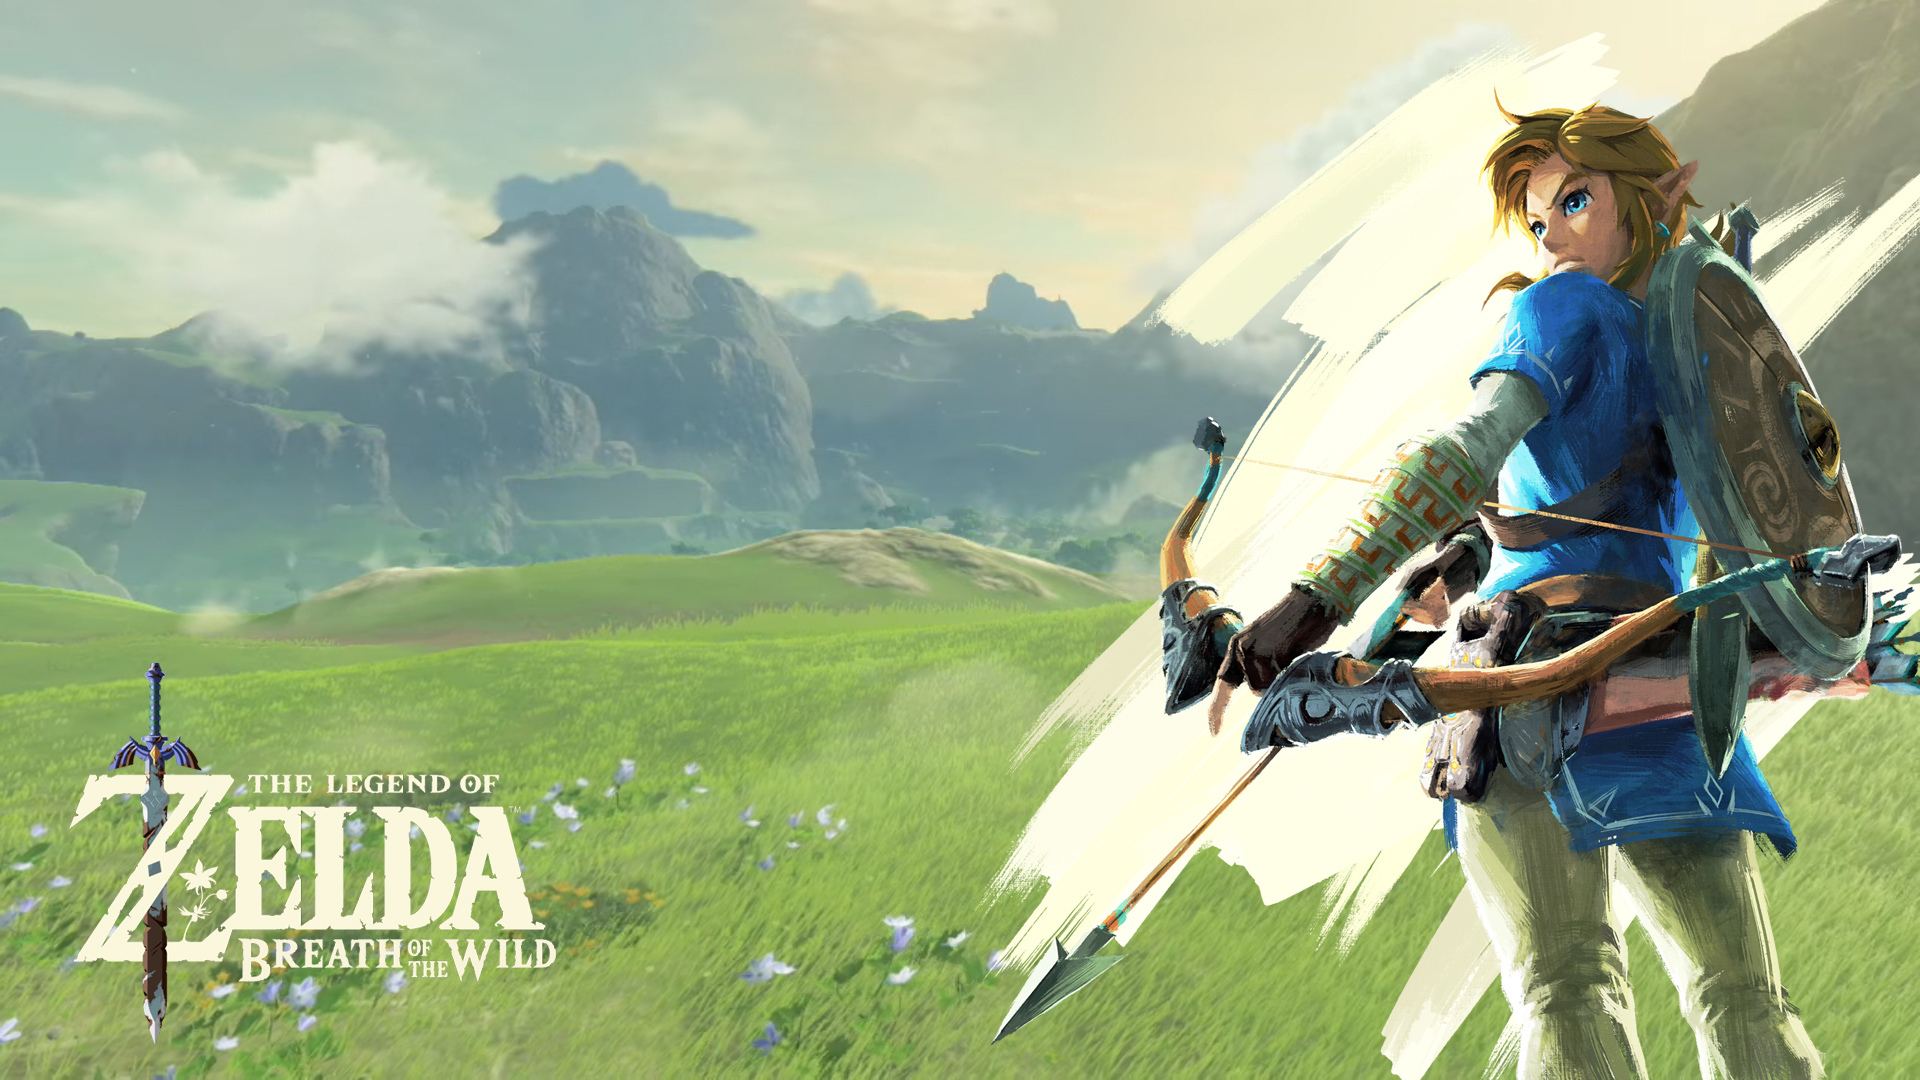 The Legend of Zelda: Breath of the Wild (Nintendo)